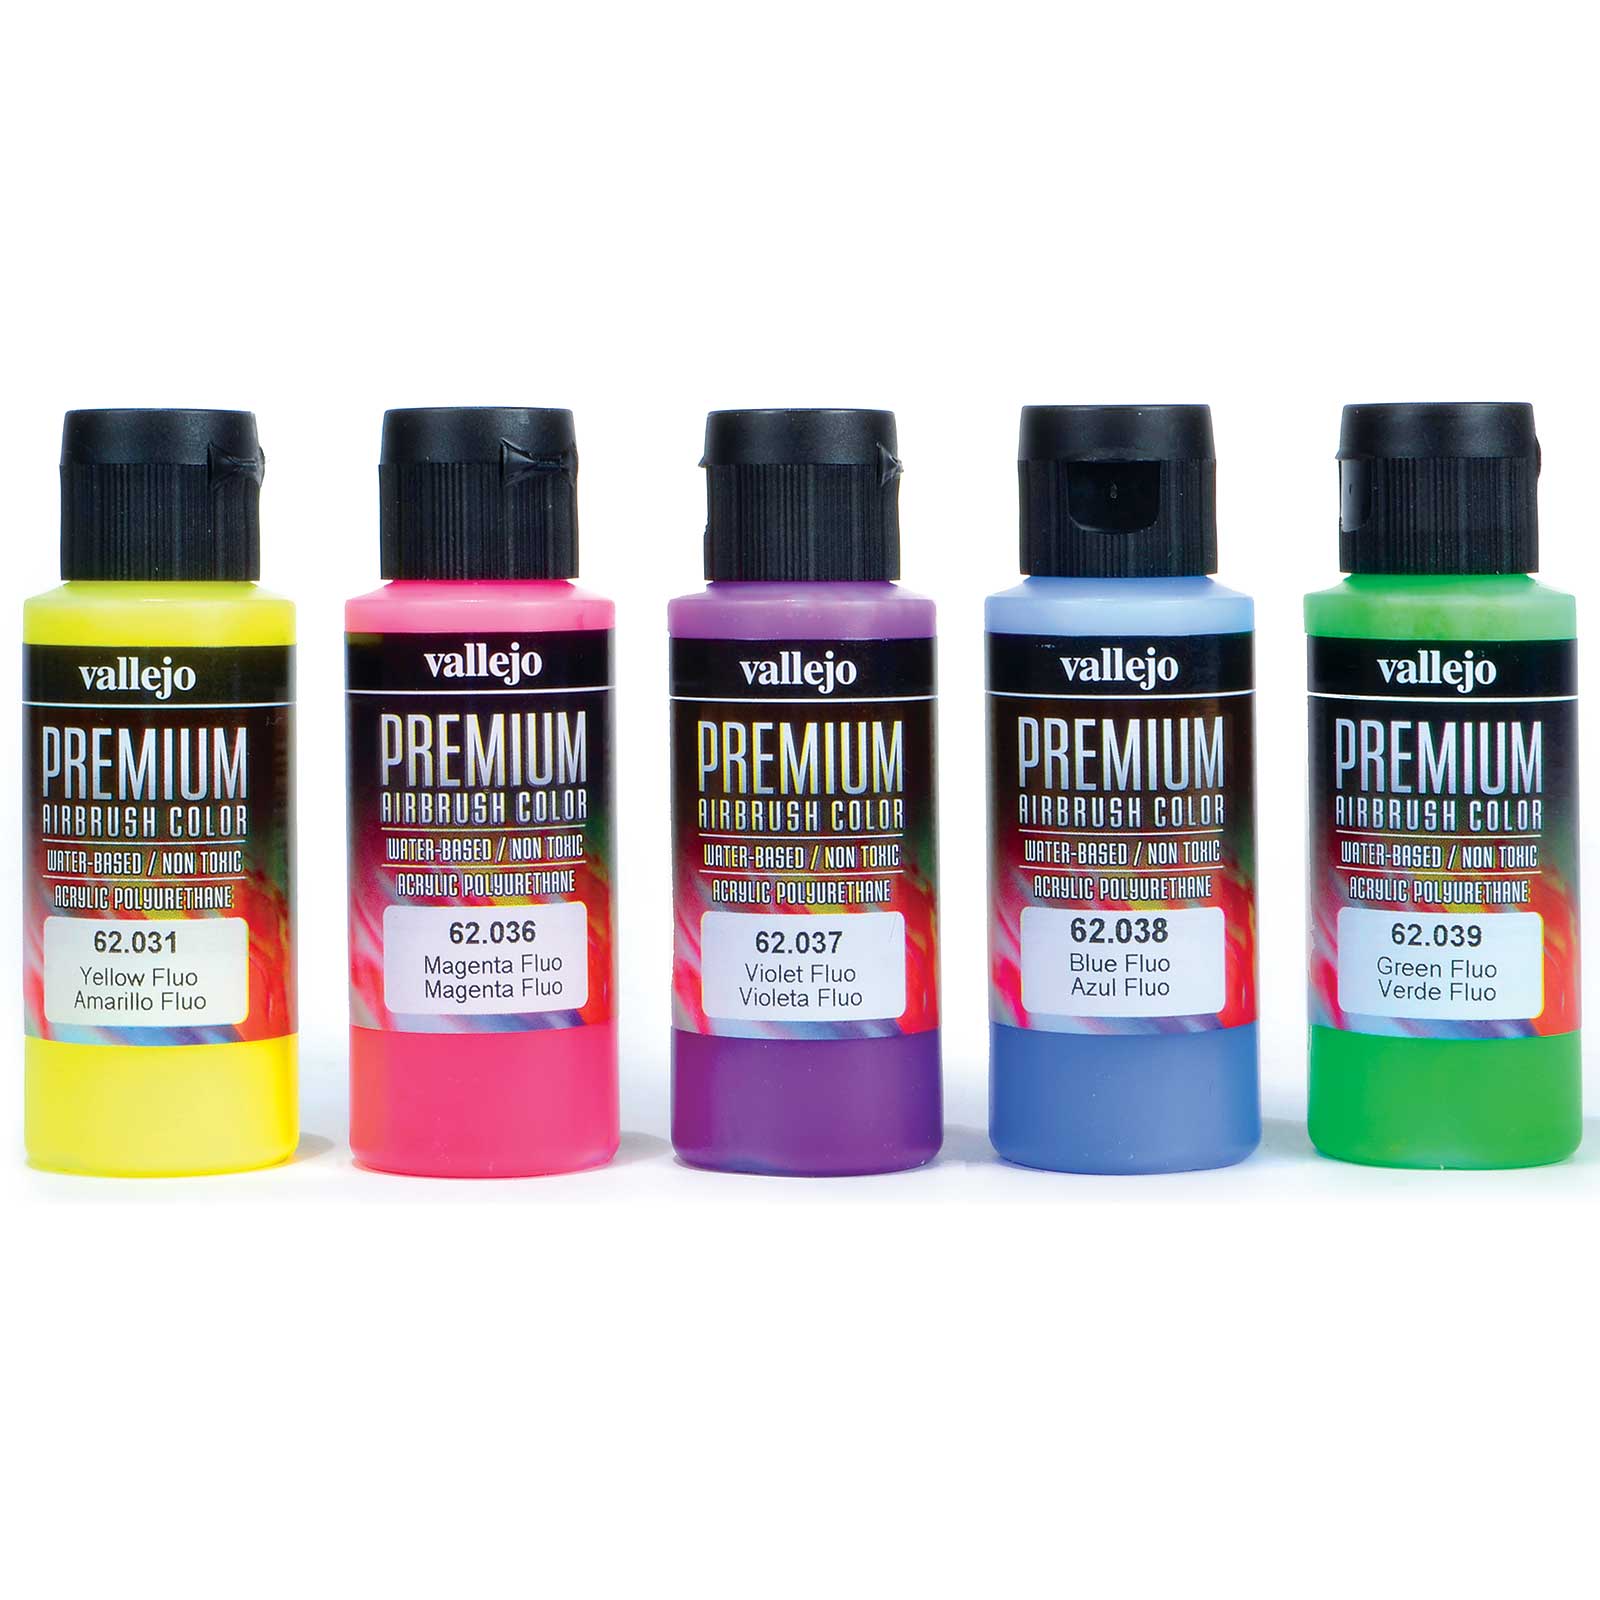 Acrylicos Vallejo Fluorescent Colors Premium Model Paint Set, 2 fl. oz. bottles, 5 Colors